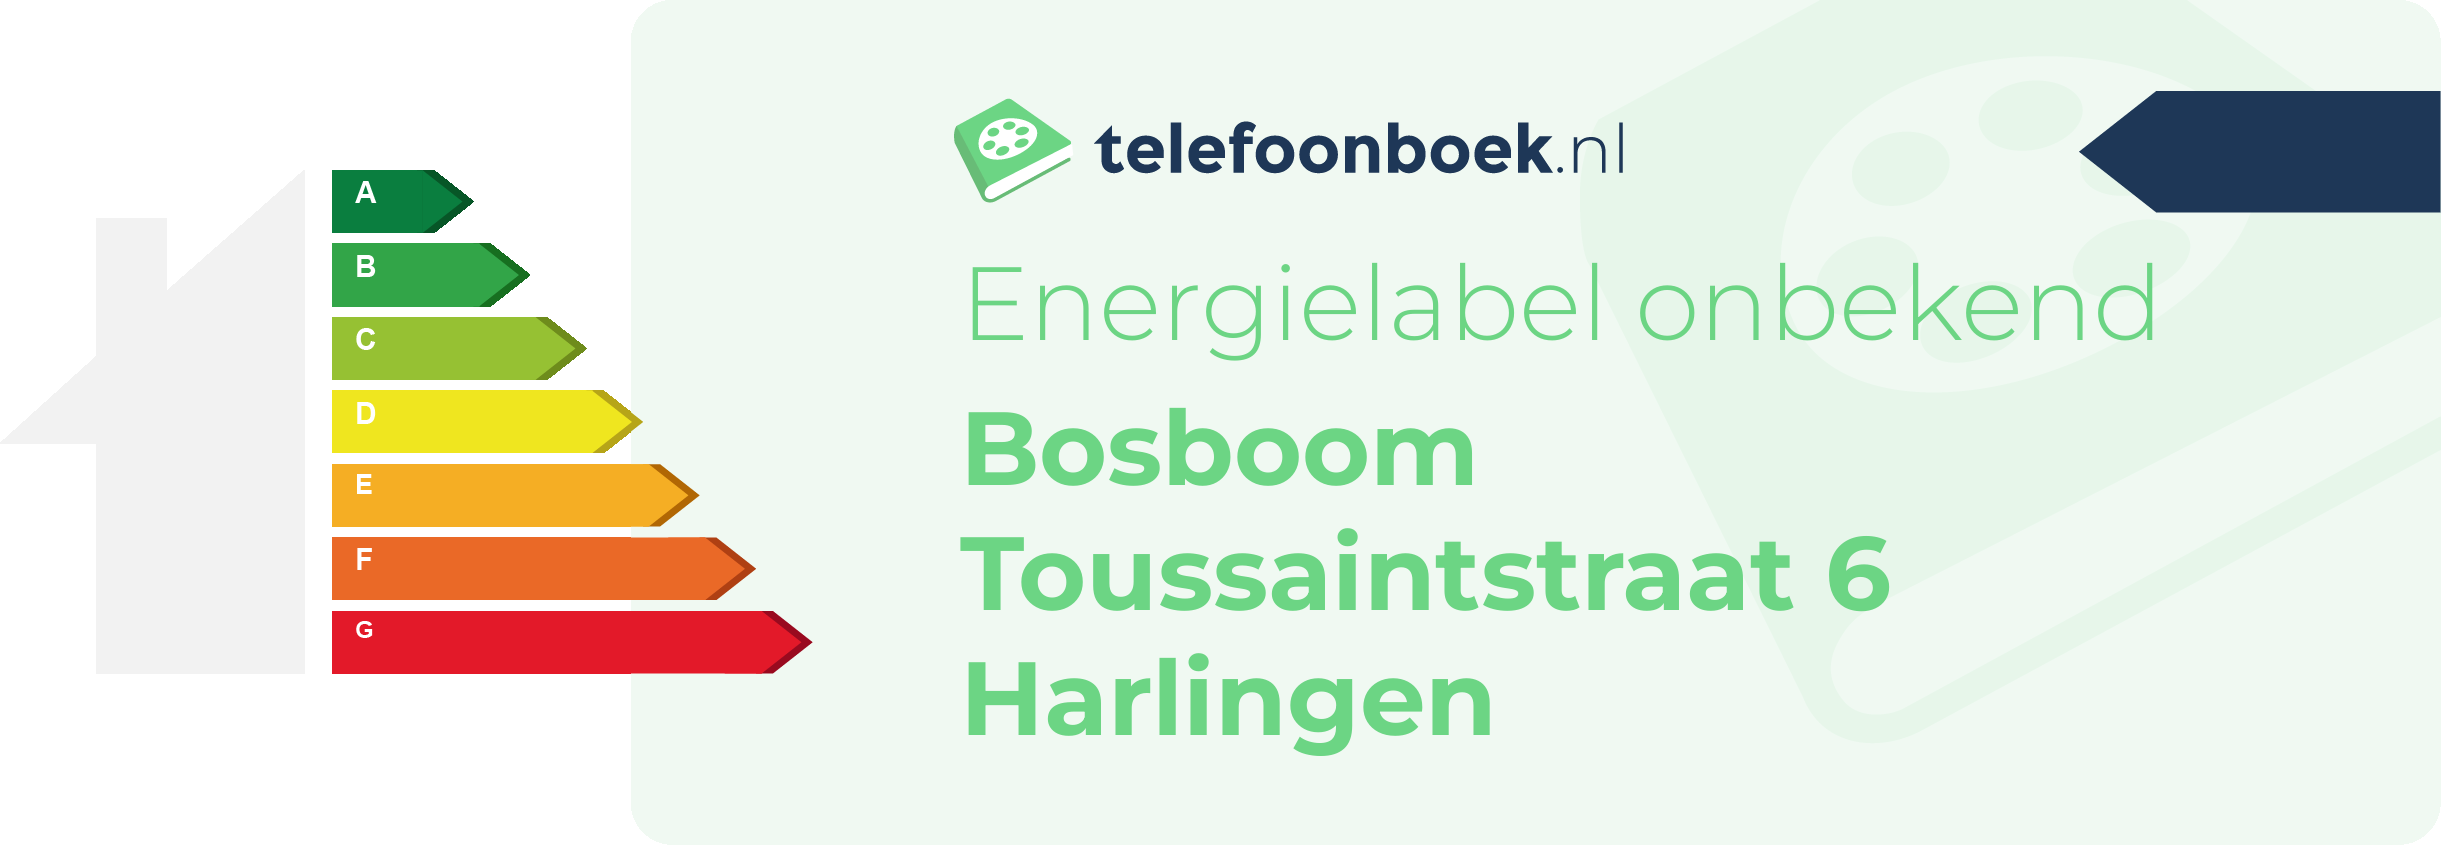 Energielabel Bosboom Toussaintstraat 6 Harlingen